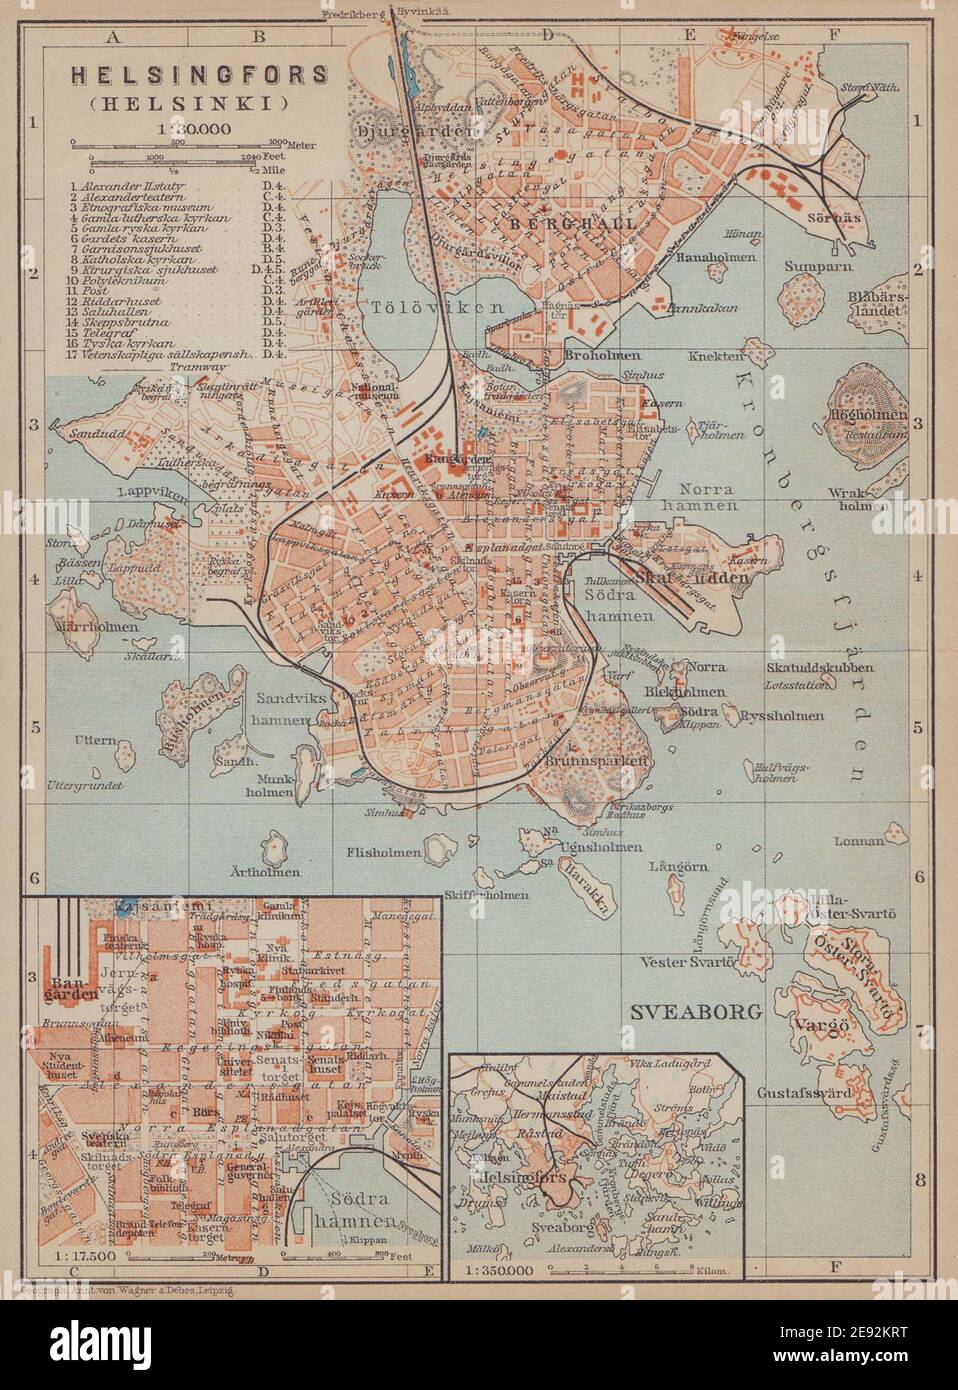 Turku town/city plan kaupunki kartta suunnitelma Finland 1912 map Åbo/Abo 